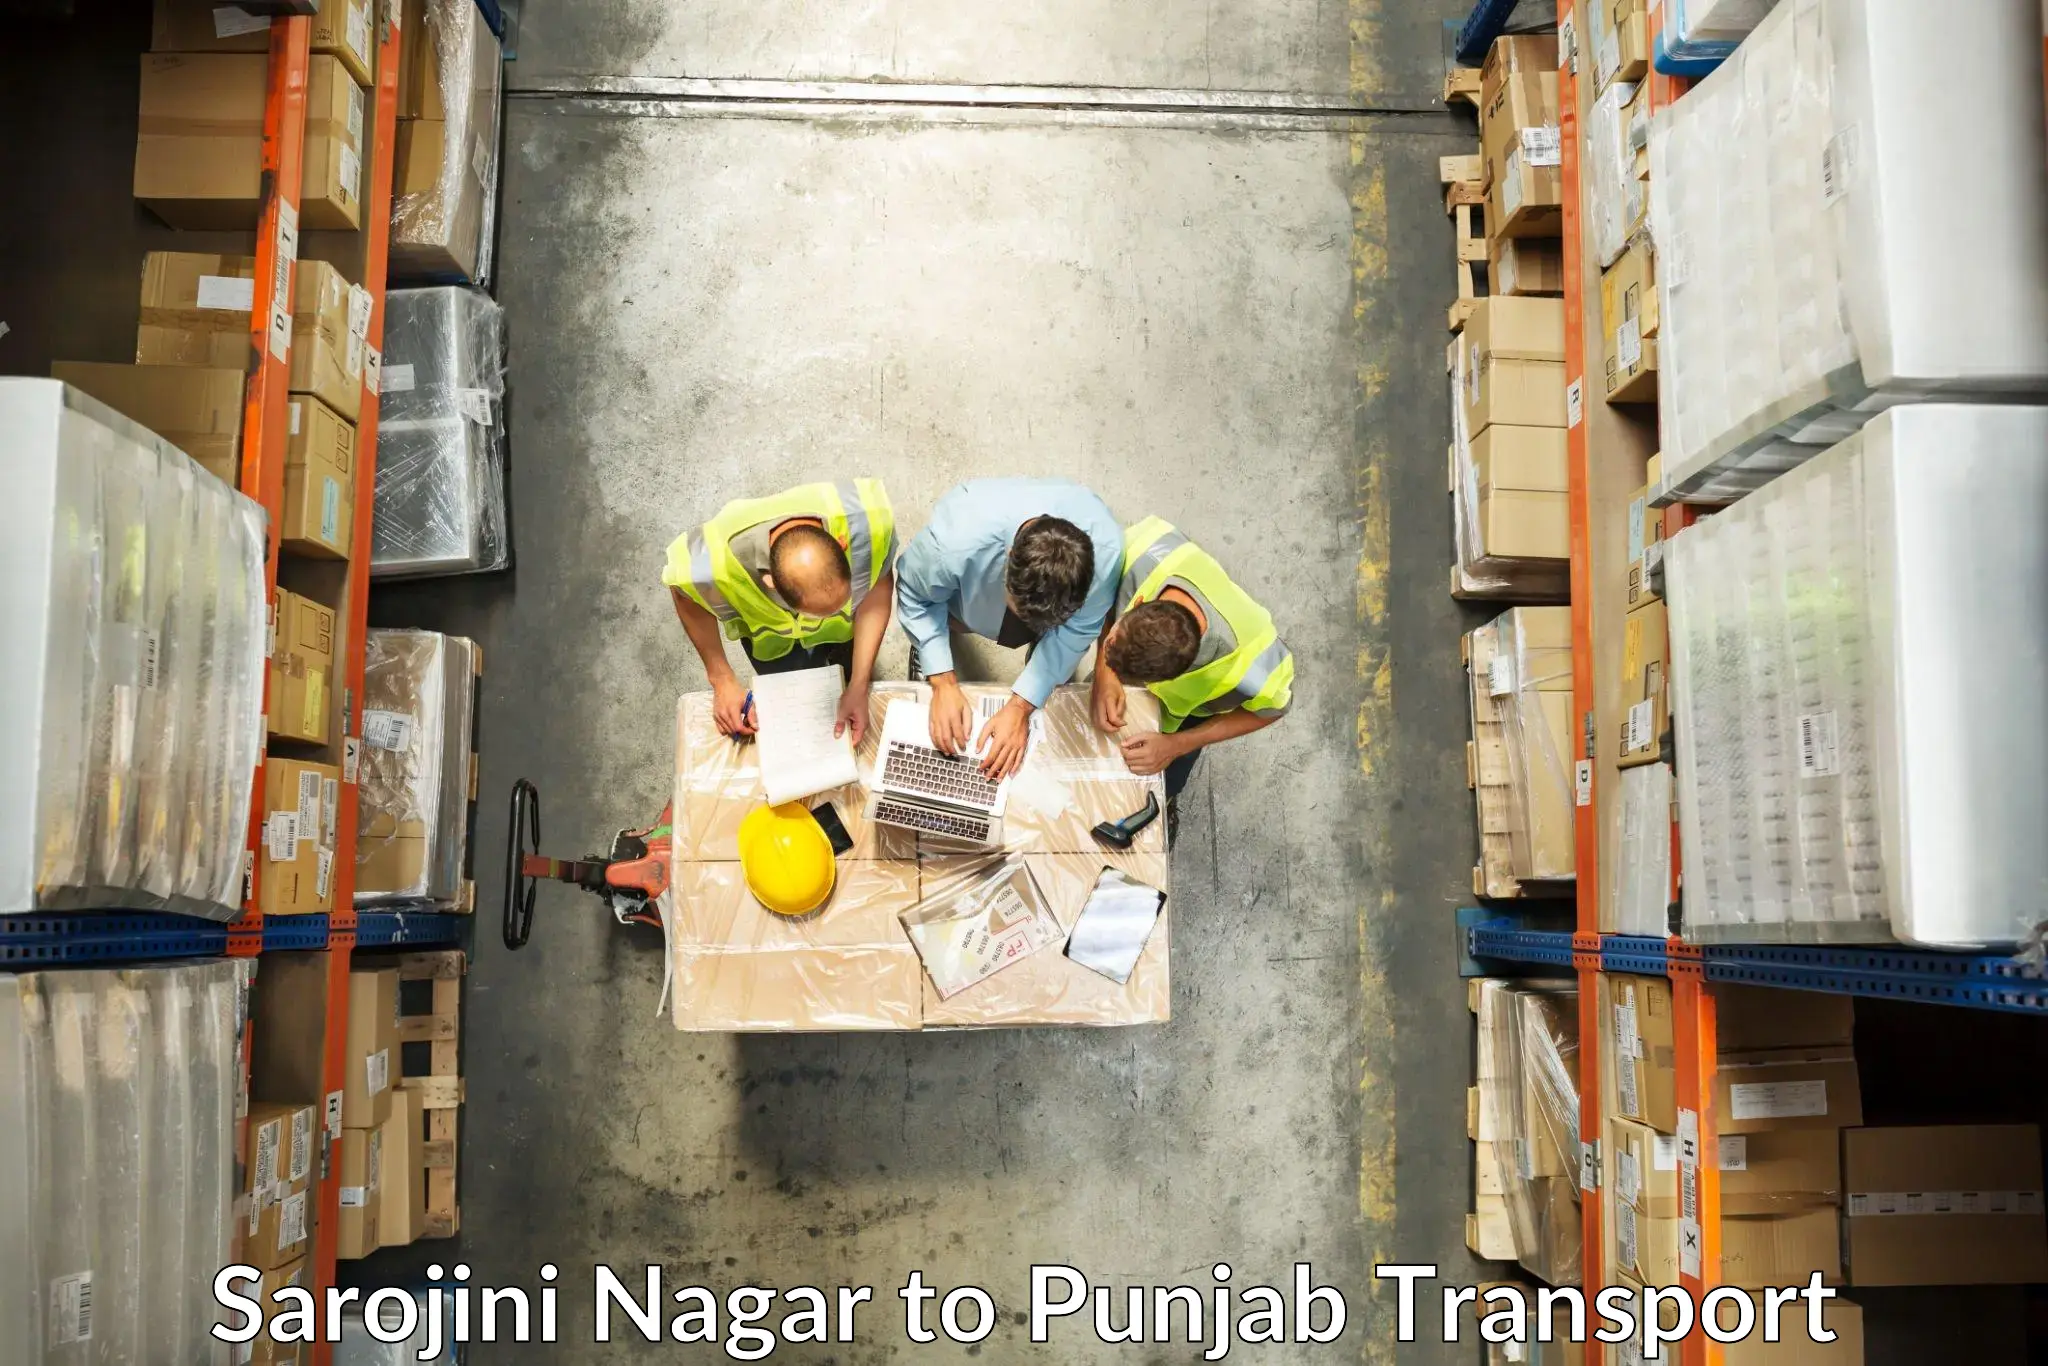 Container transport service Sarojini Nagar to Dera Bassi